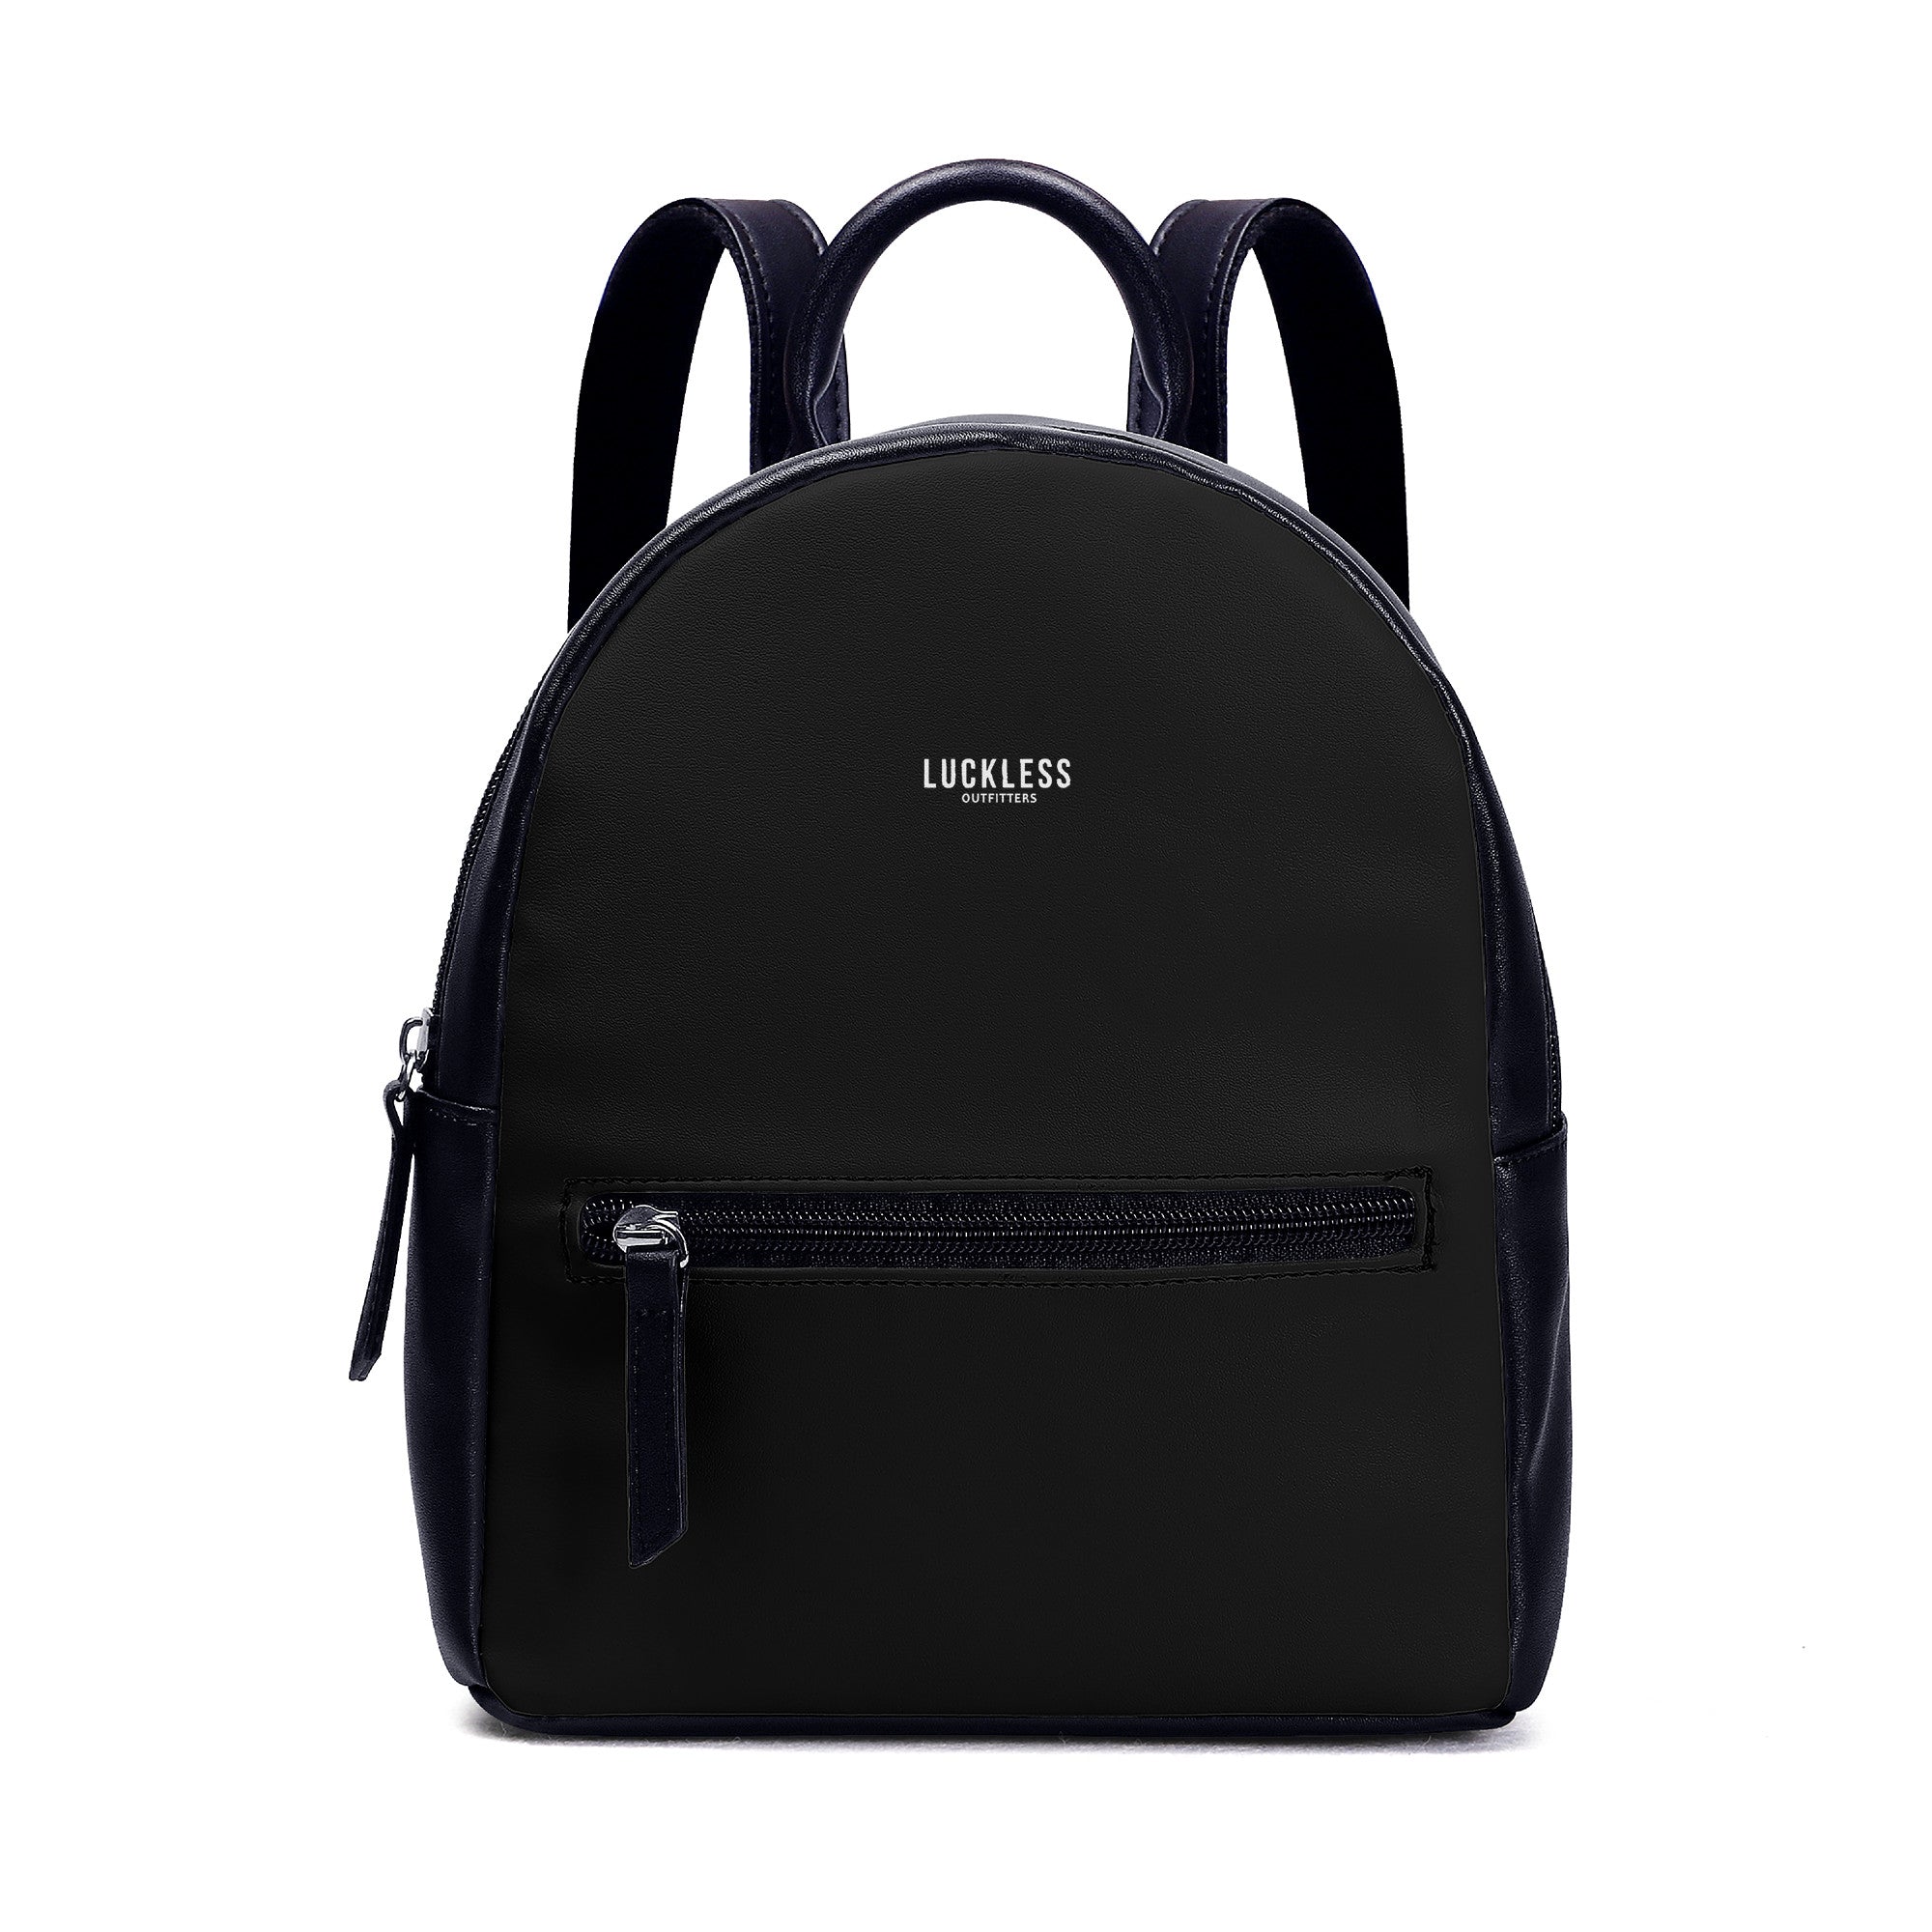 Mini Backpack Purse, Leather Backpack Women, Small Backpack, Black Leather  Backpack - Etsy